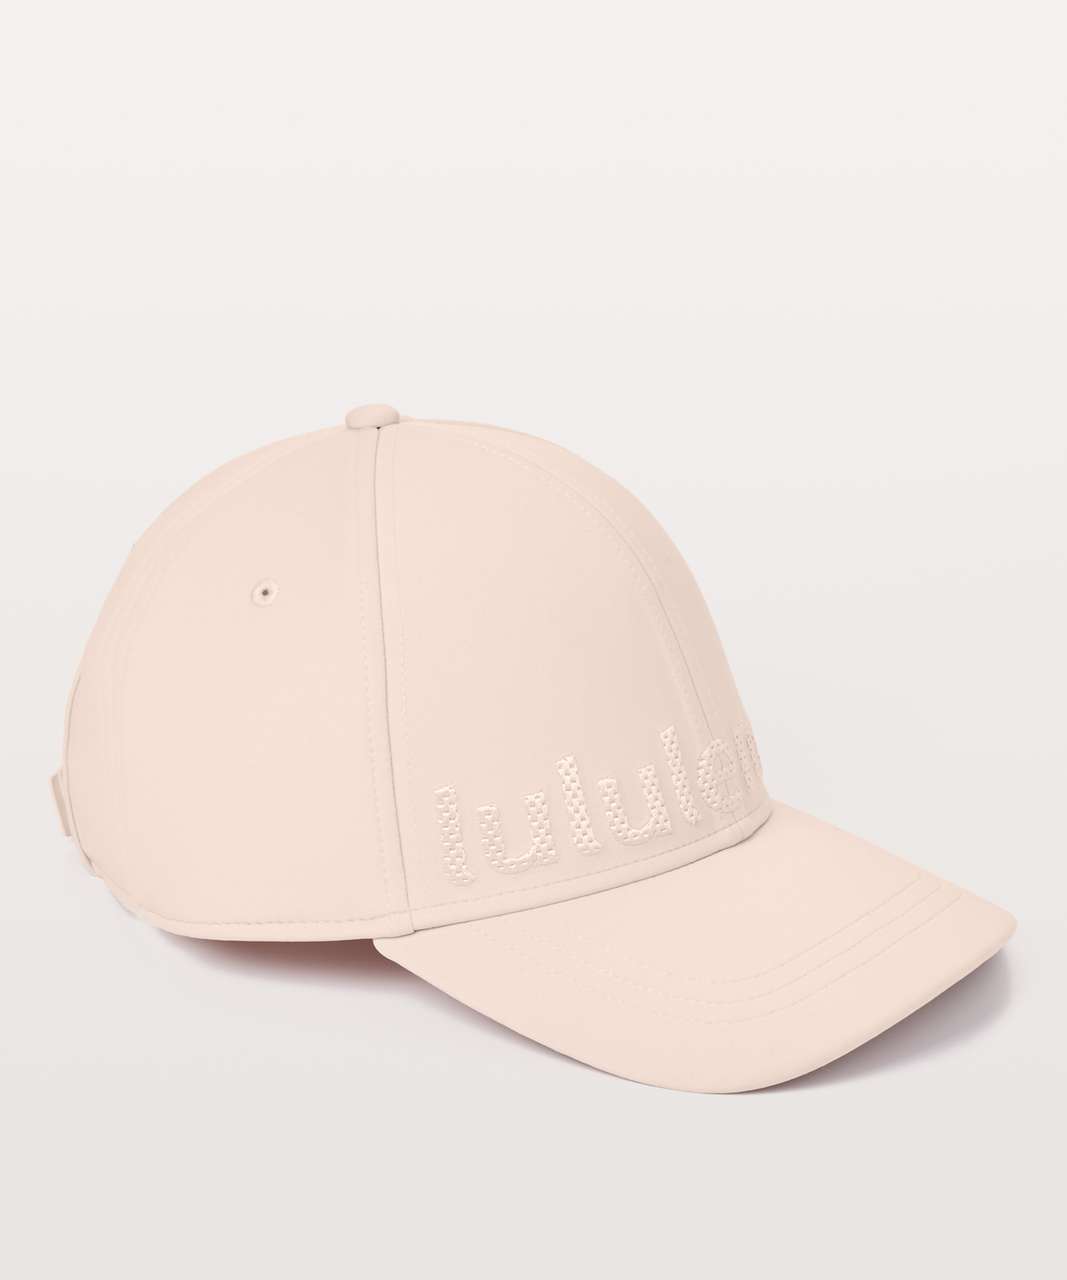 Lululemon Baller Hat *Squad - Misty Pink